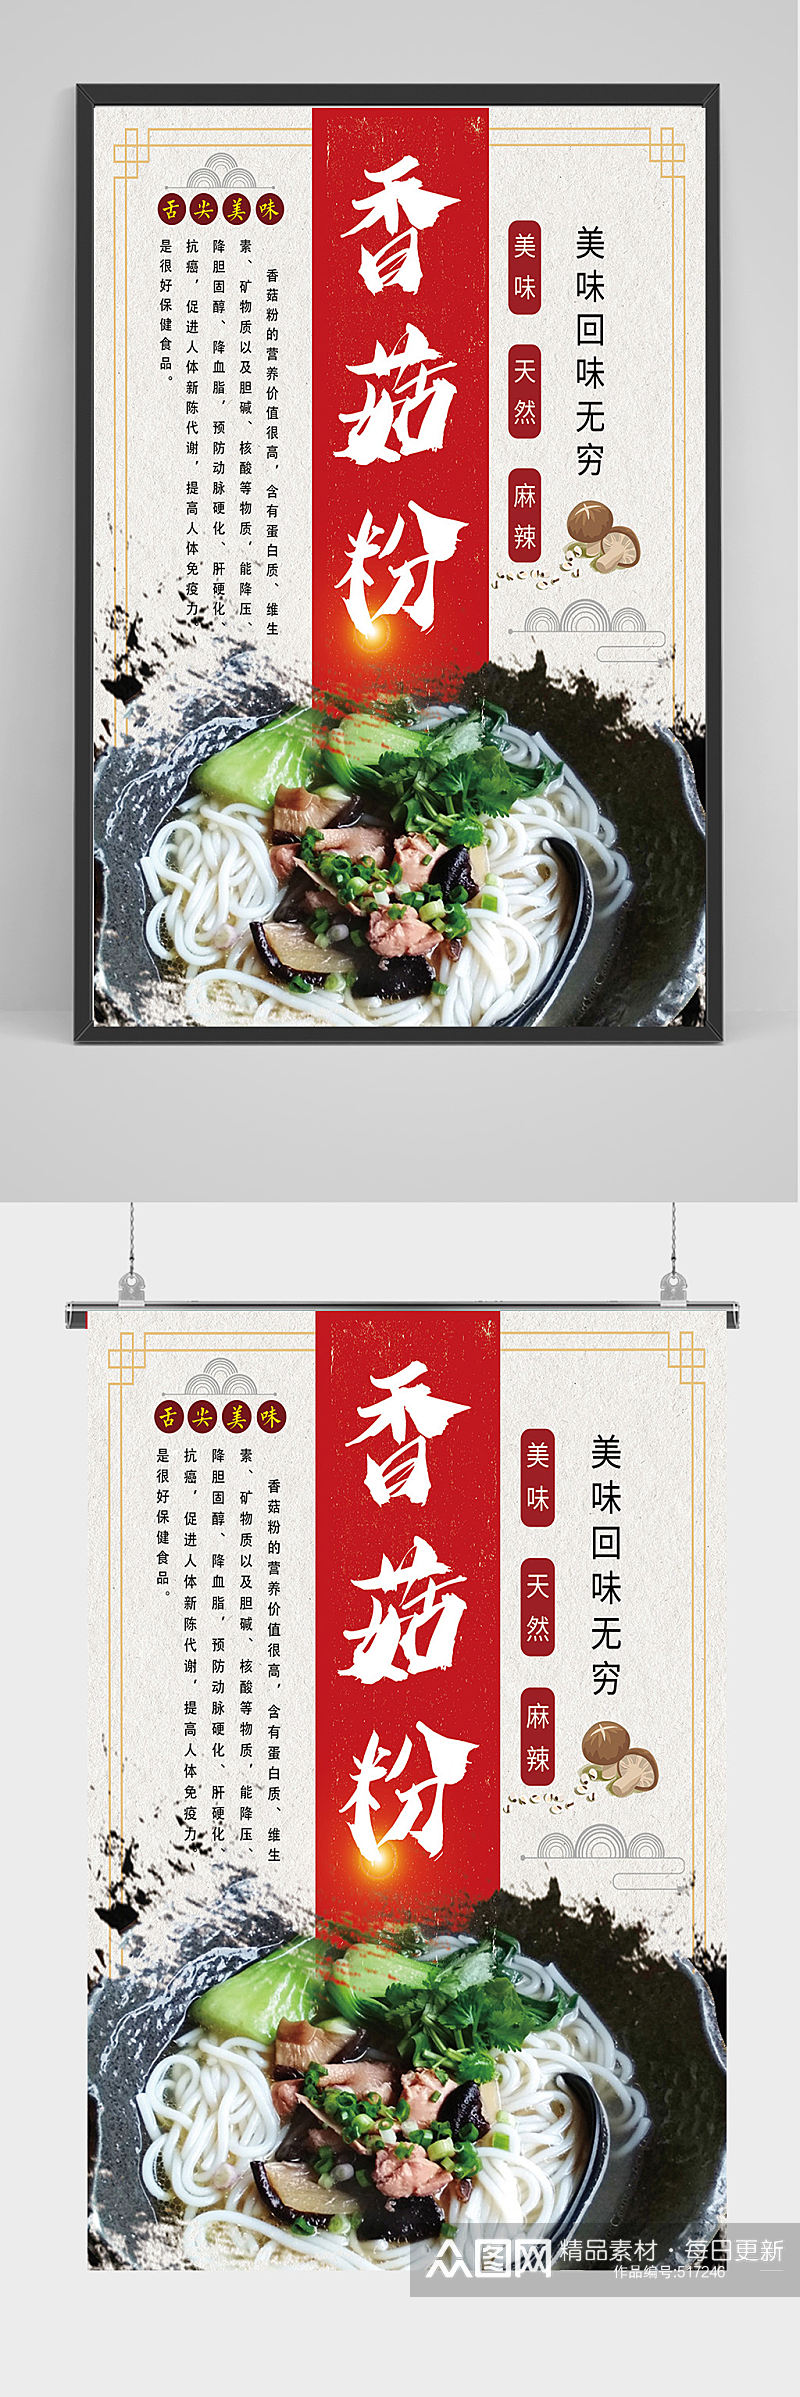 中国风香菇粉 米粉 海报设计素材